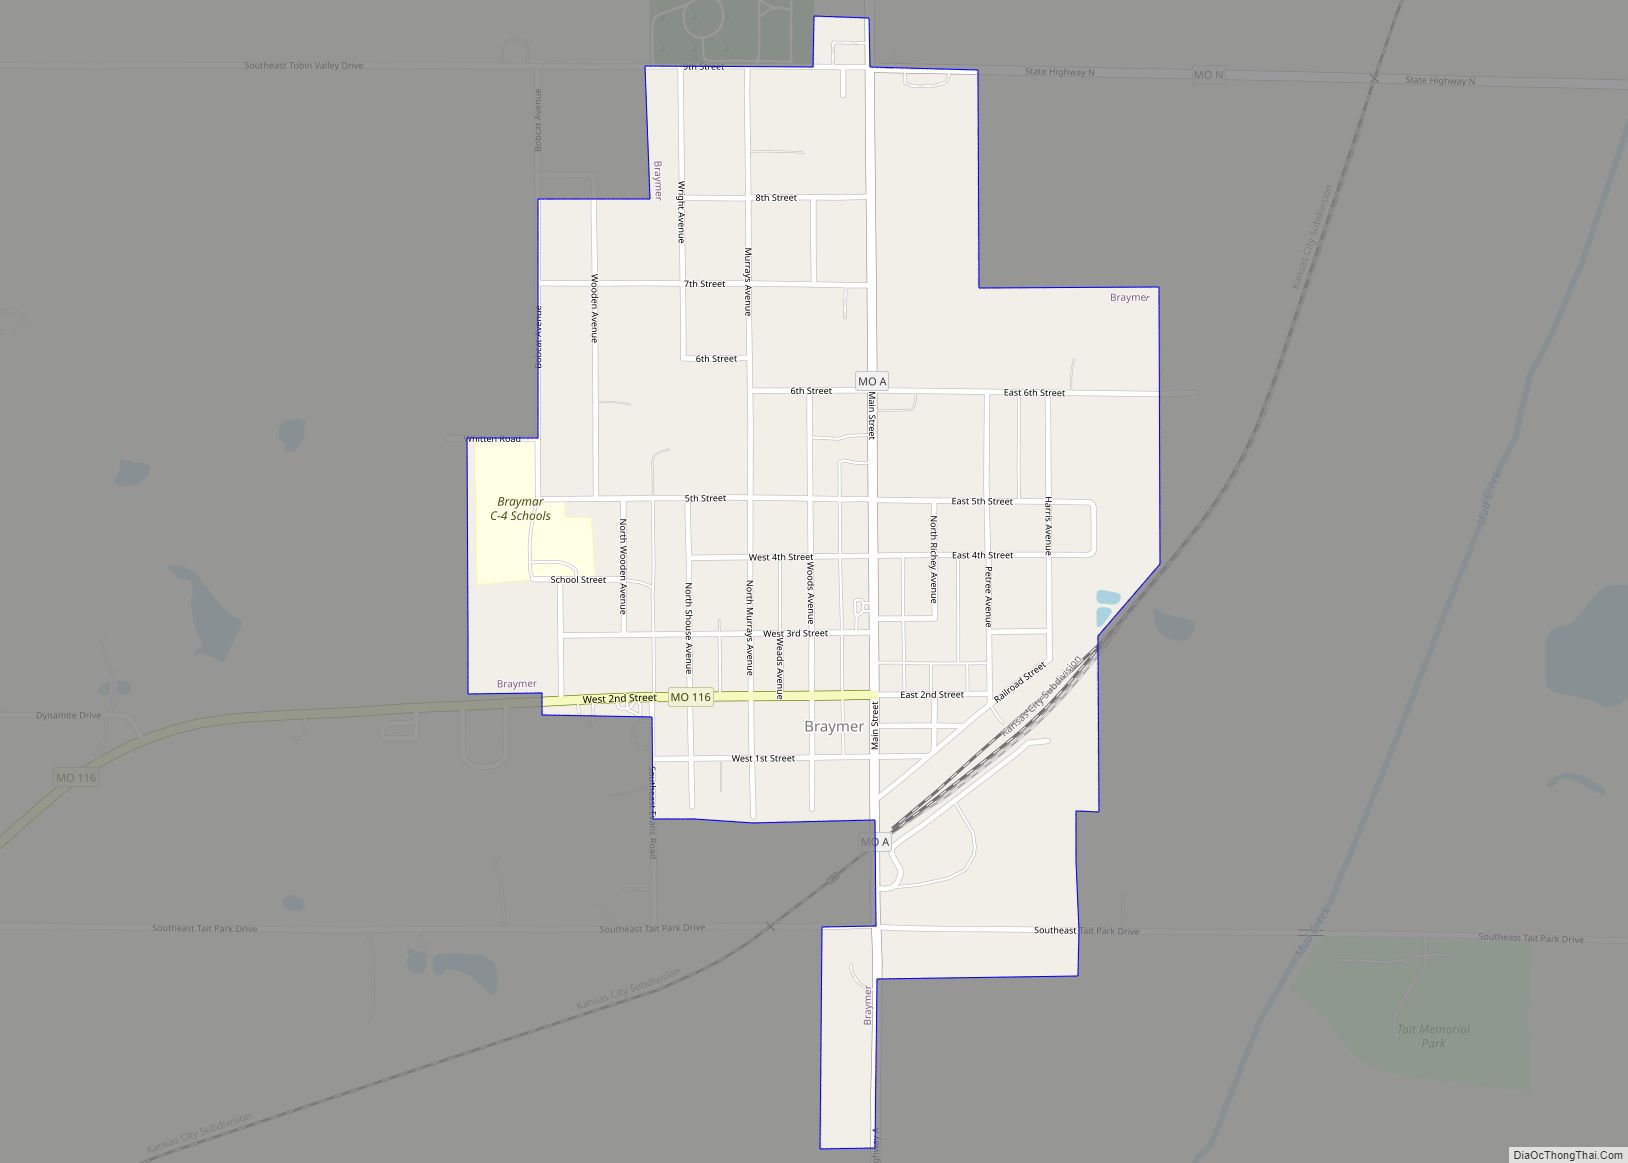 Map of Braymer city